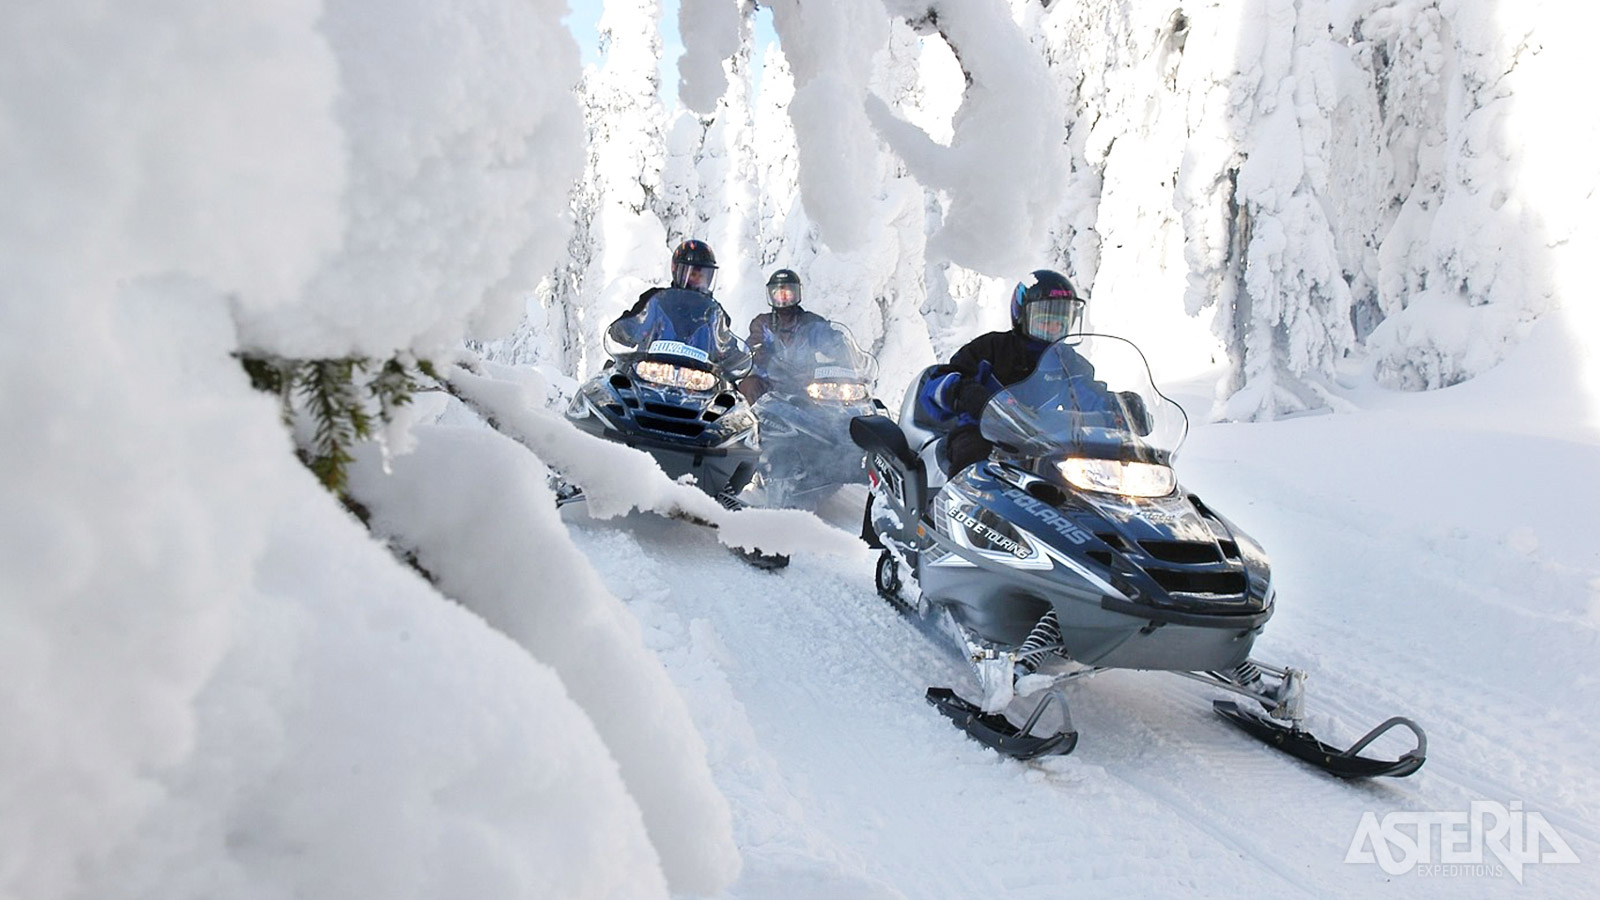 Met het Lapse transportmiddel bij uitstek rijd je langs sneeuwlandschappen, op bevroren meren en door dichte bossen